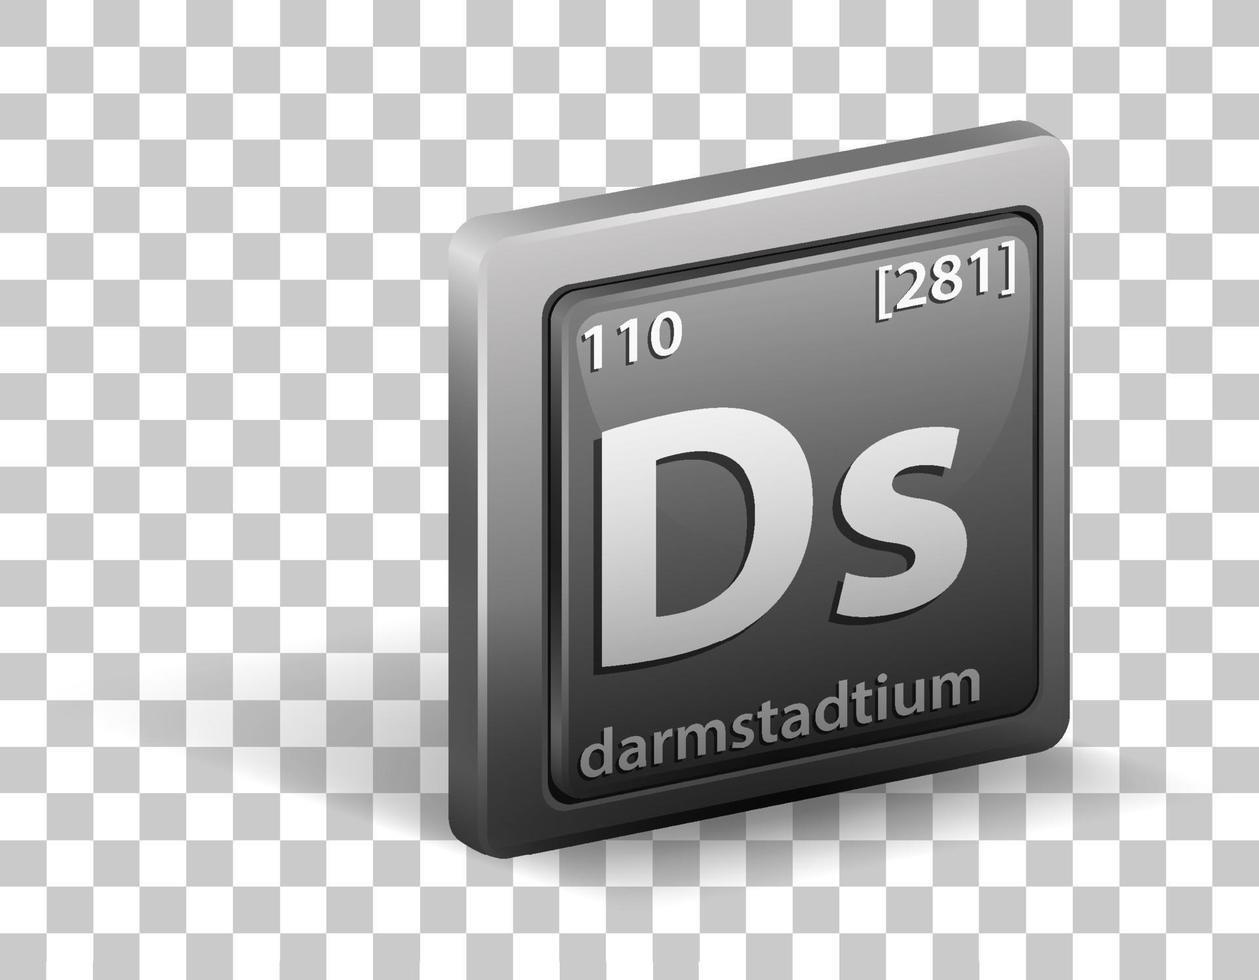 elemento químico darmstadtium vector